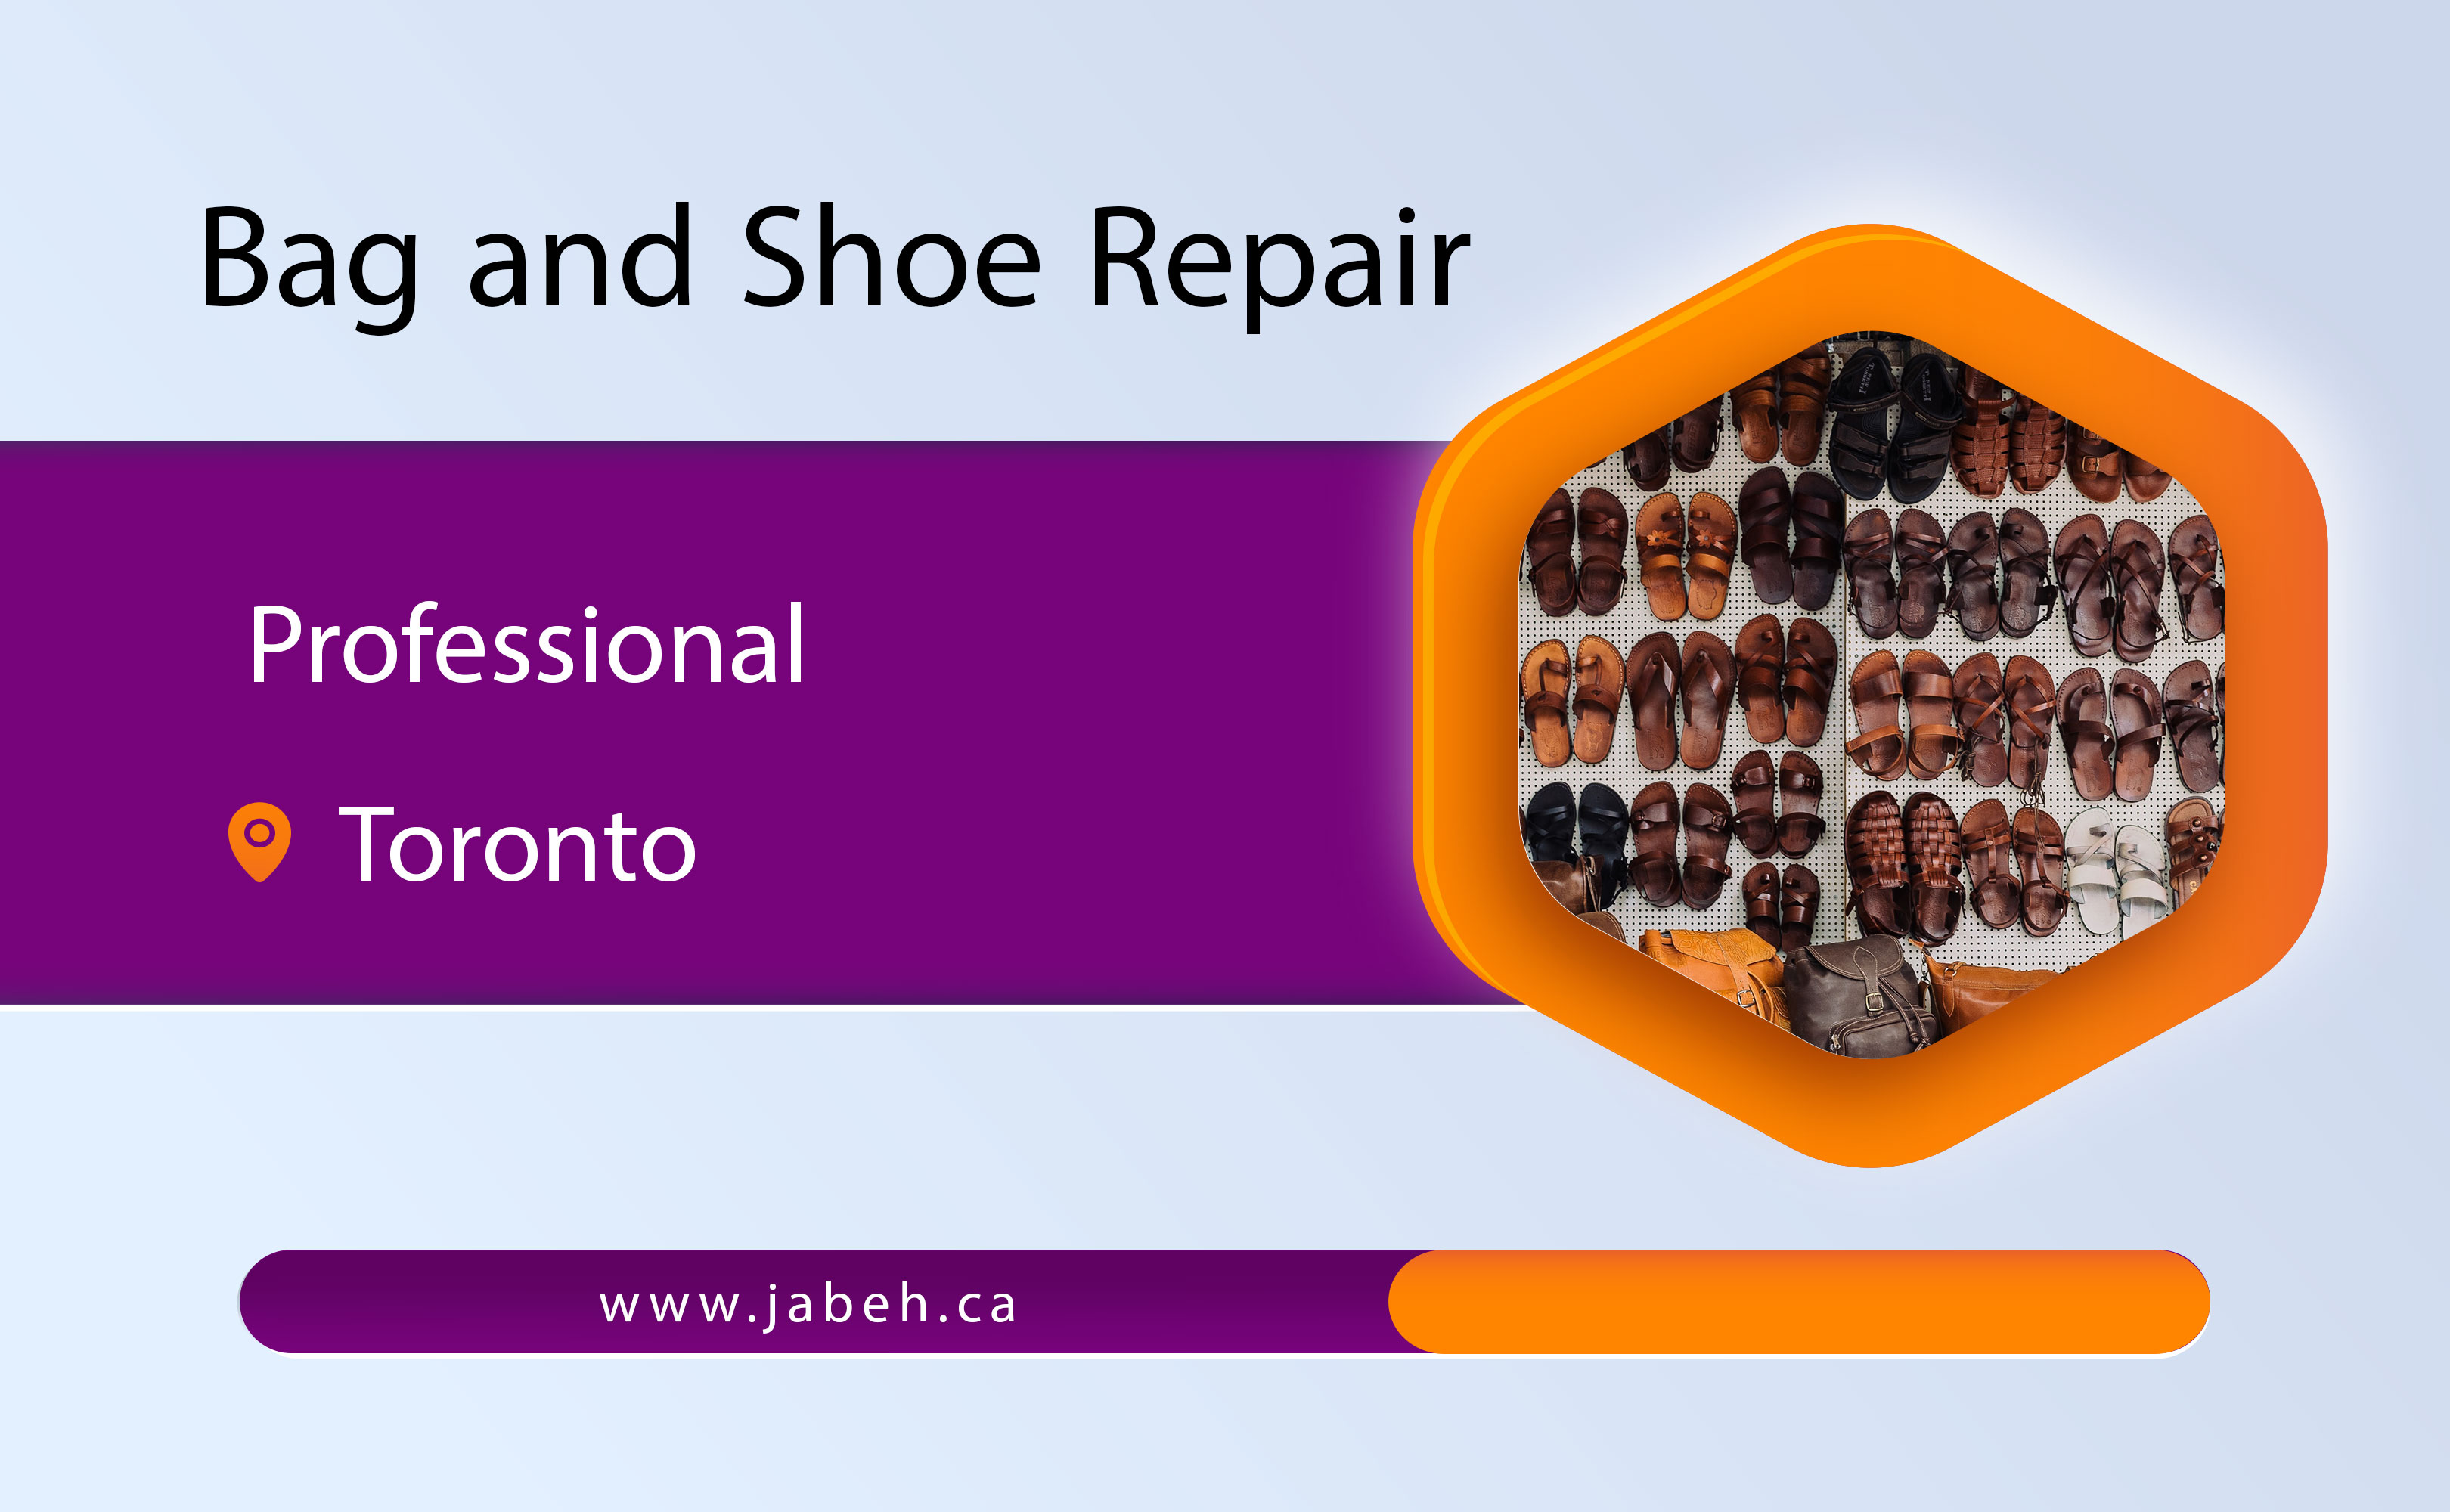 Professional Iranian bag and shoe repair in Toronto